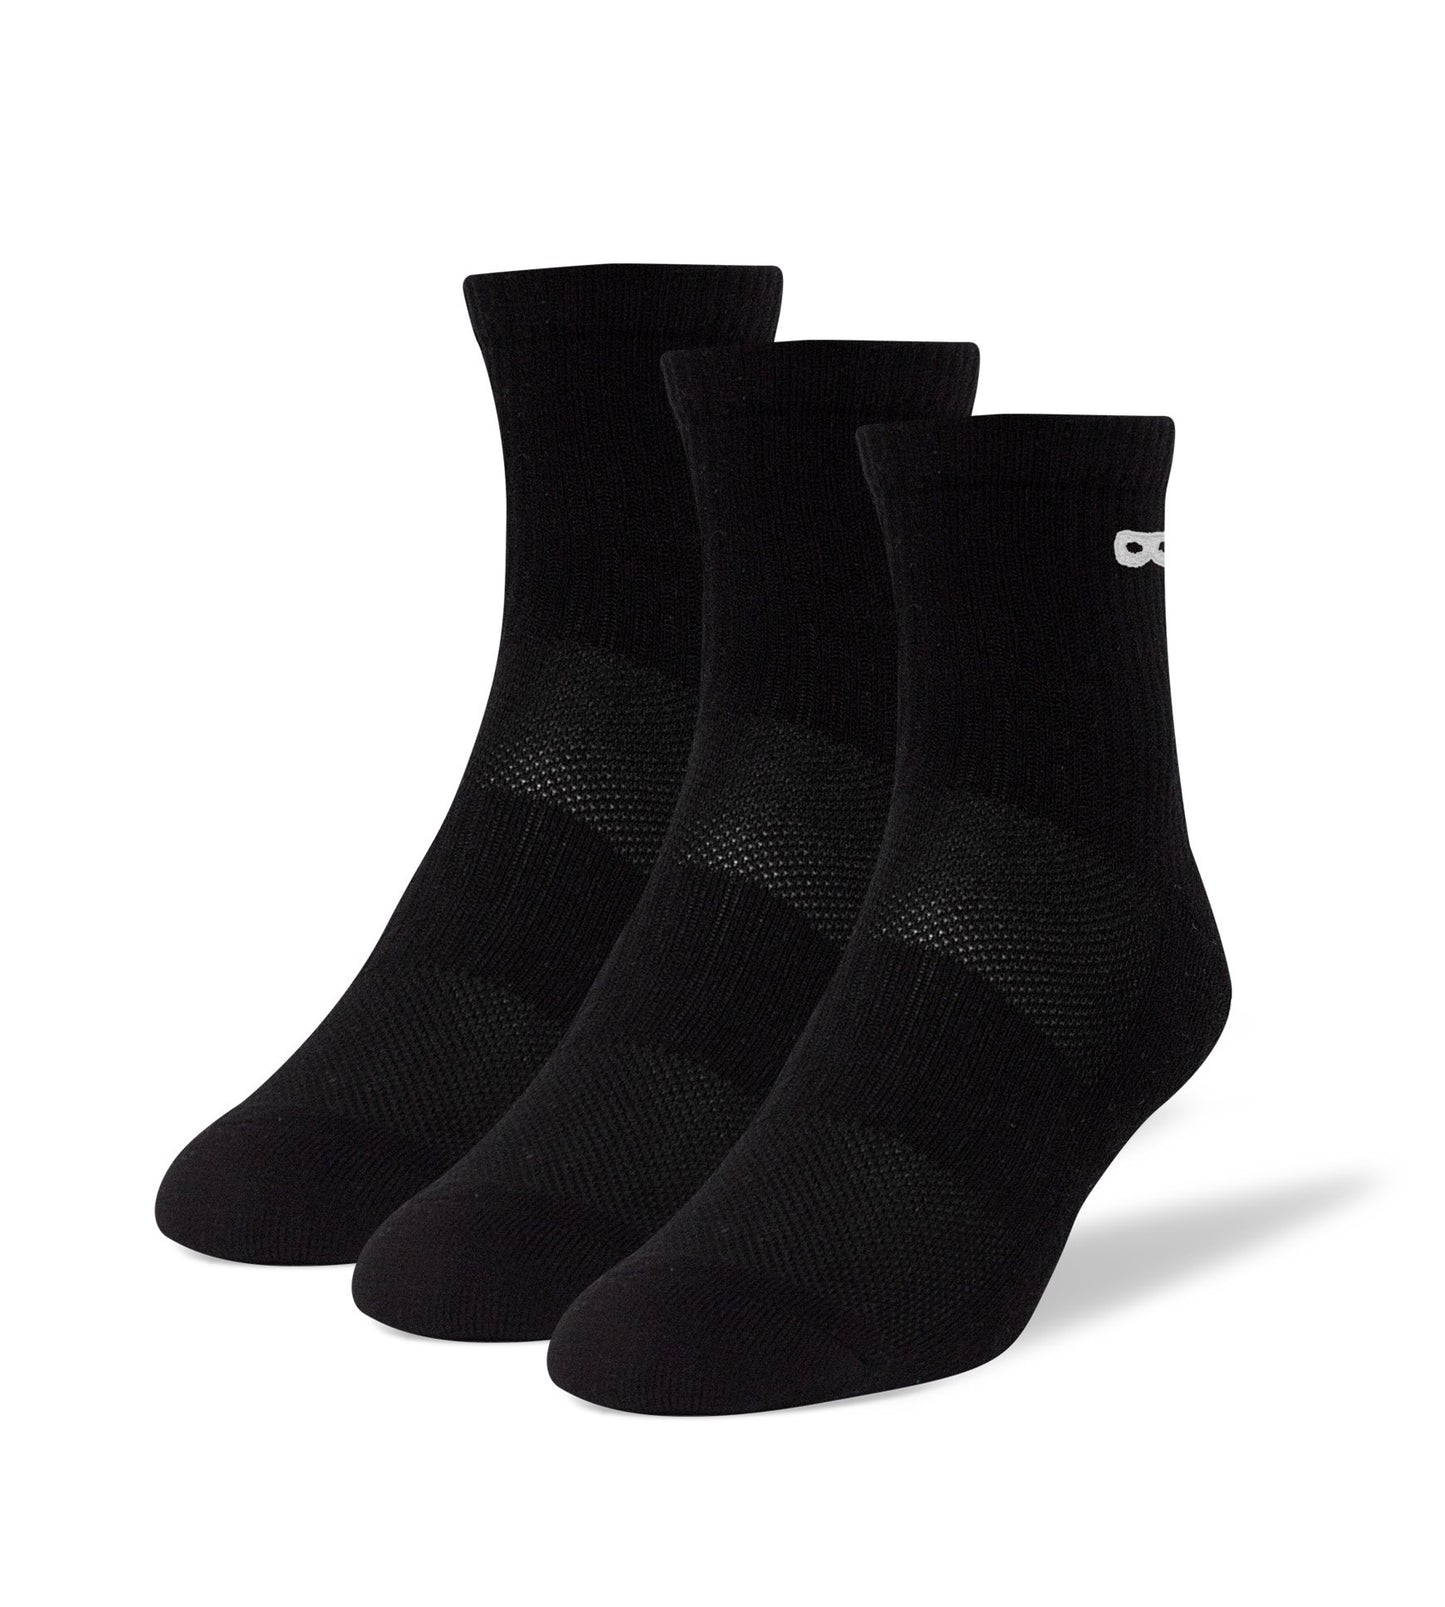 Blackout Women's Cushion Ankle Socks 3 Pack